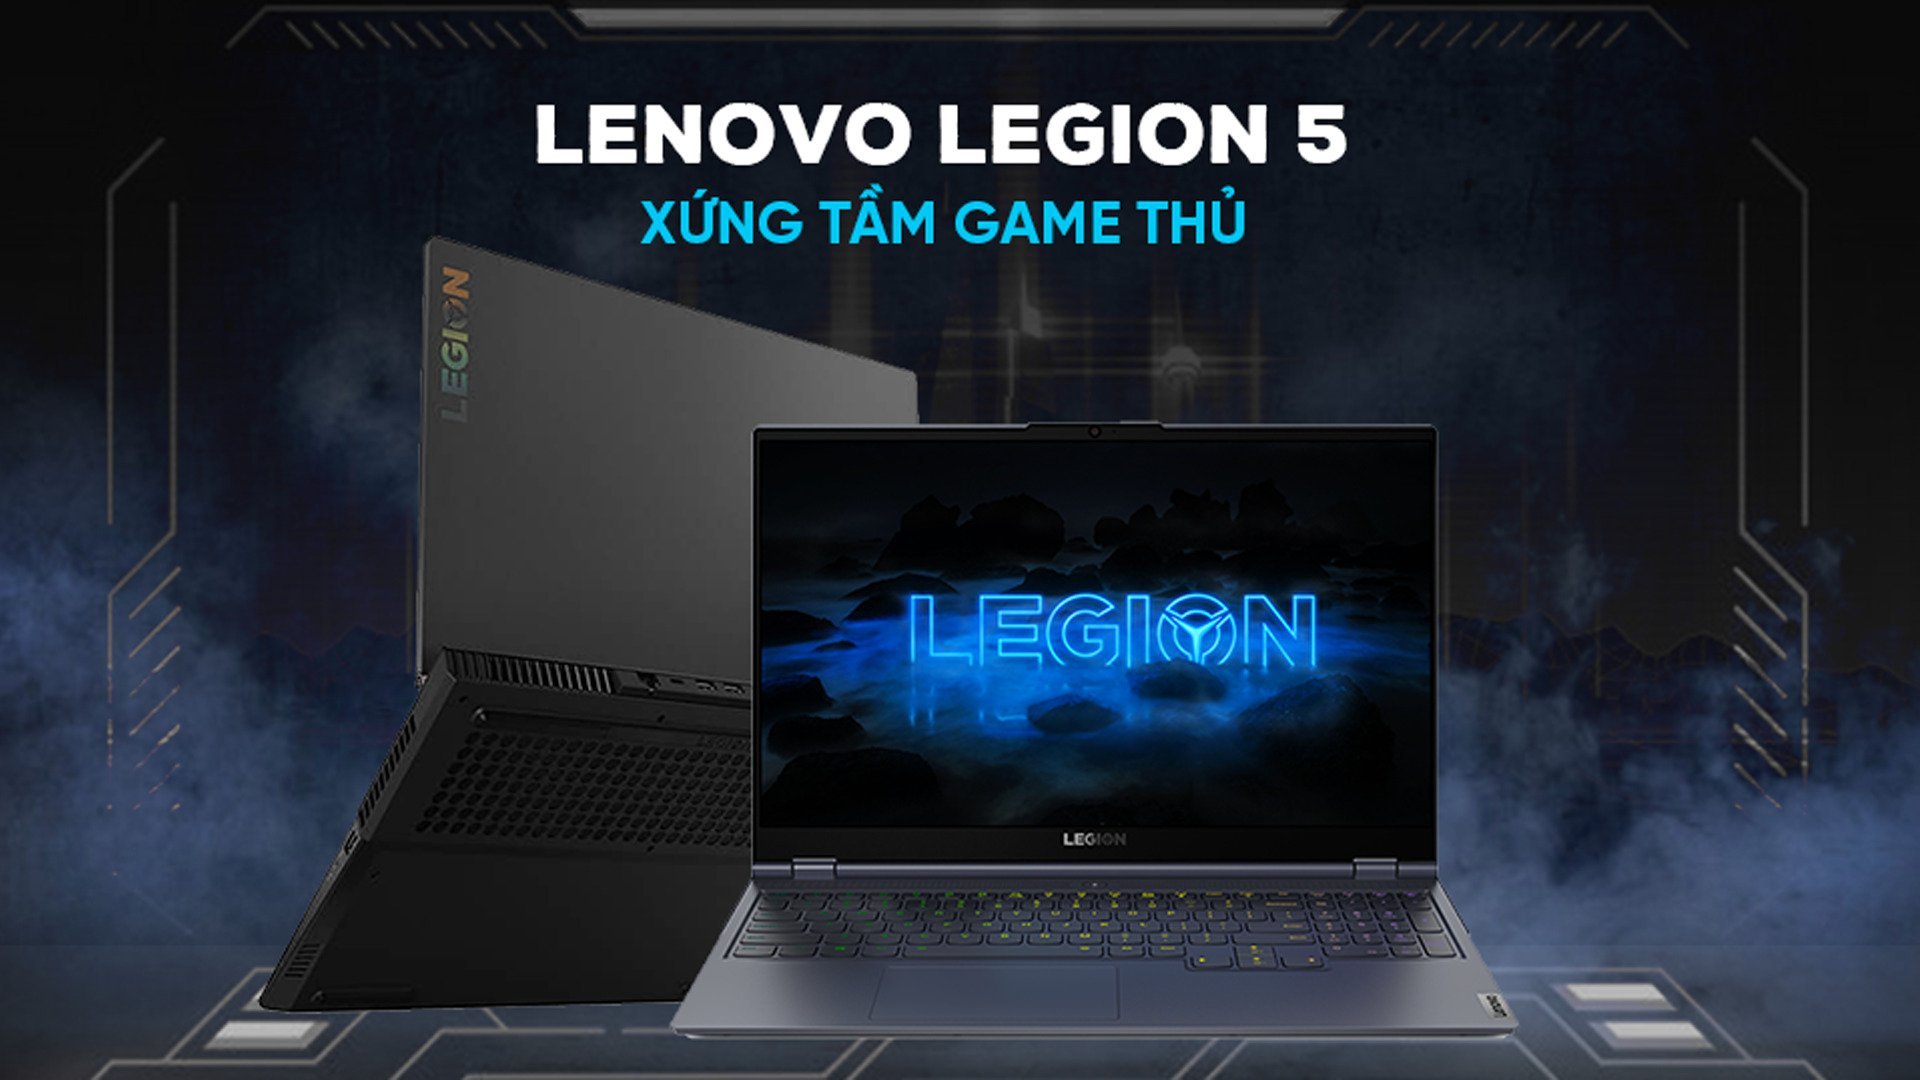 Lenovo Legion 5 2020 - Laptop chuyên Game cấu hình siêu khủng